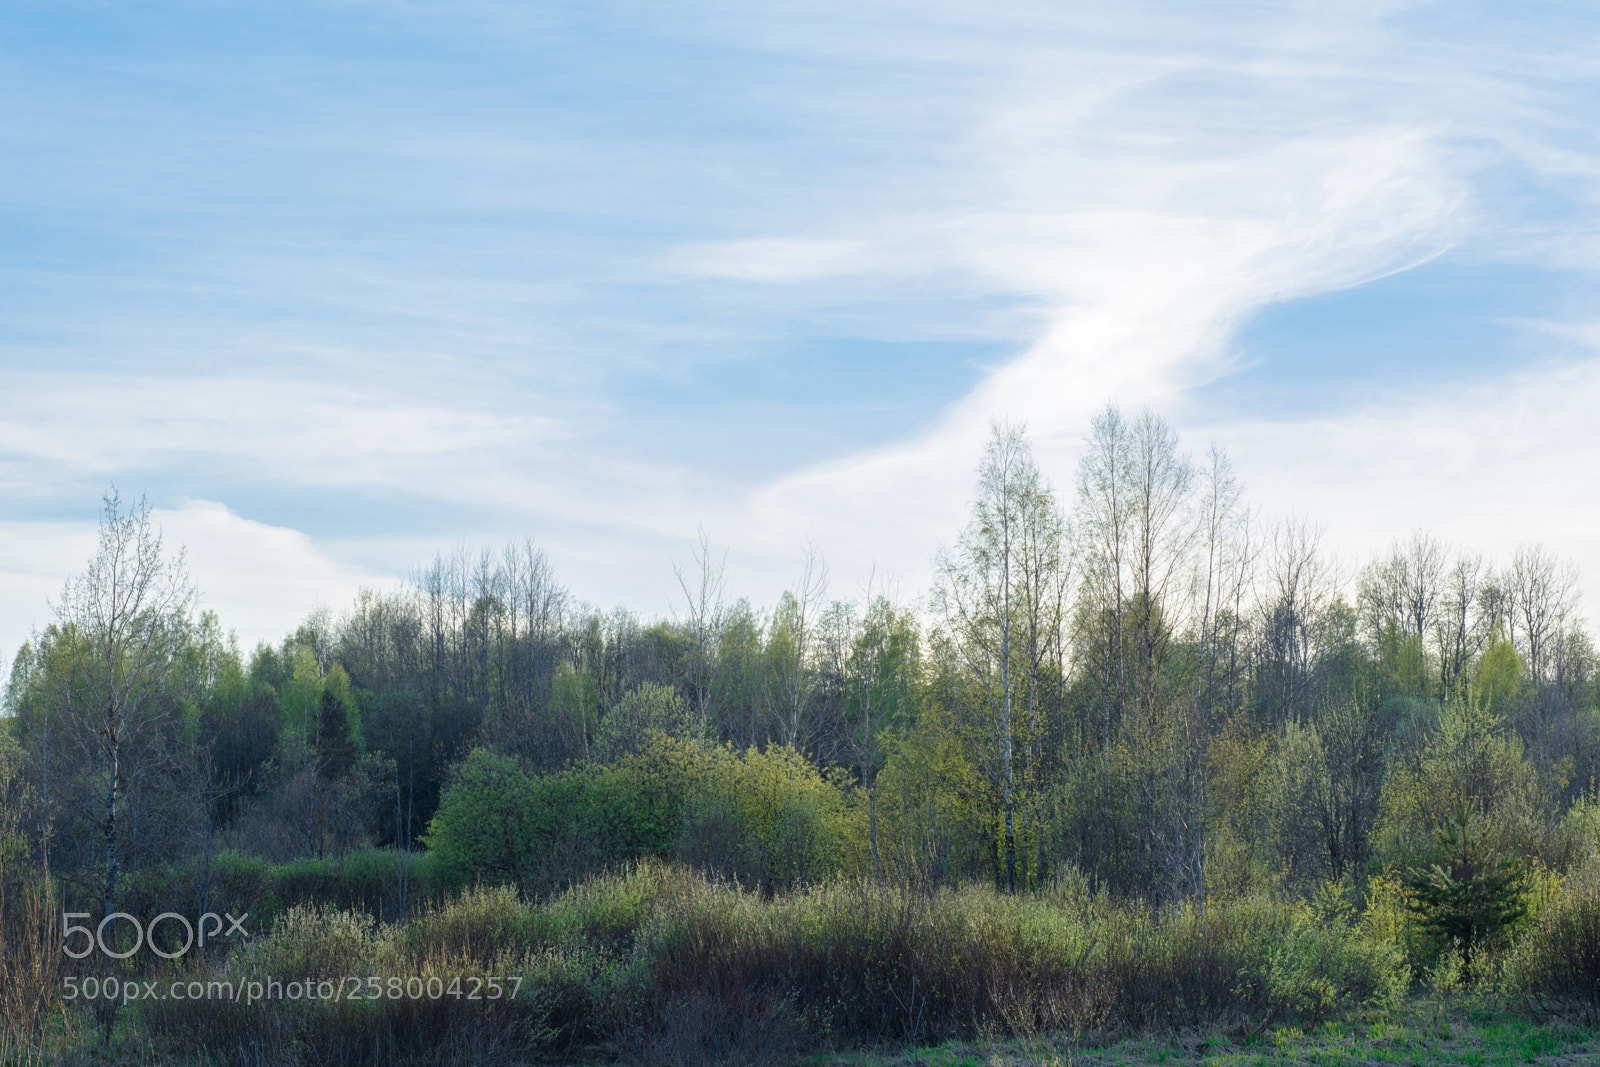 Nikon D7100 sample photo. Spring woodlot landscape in photography